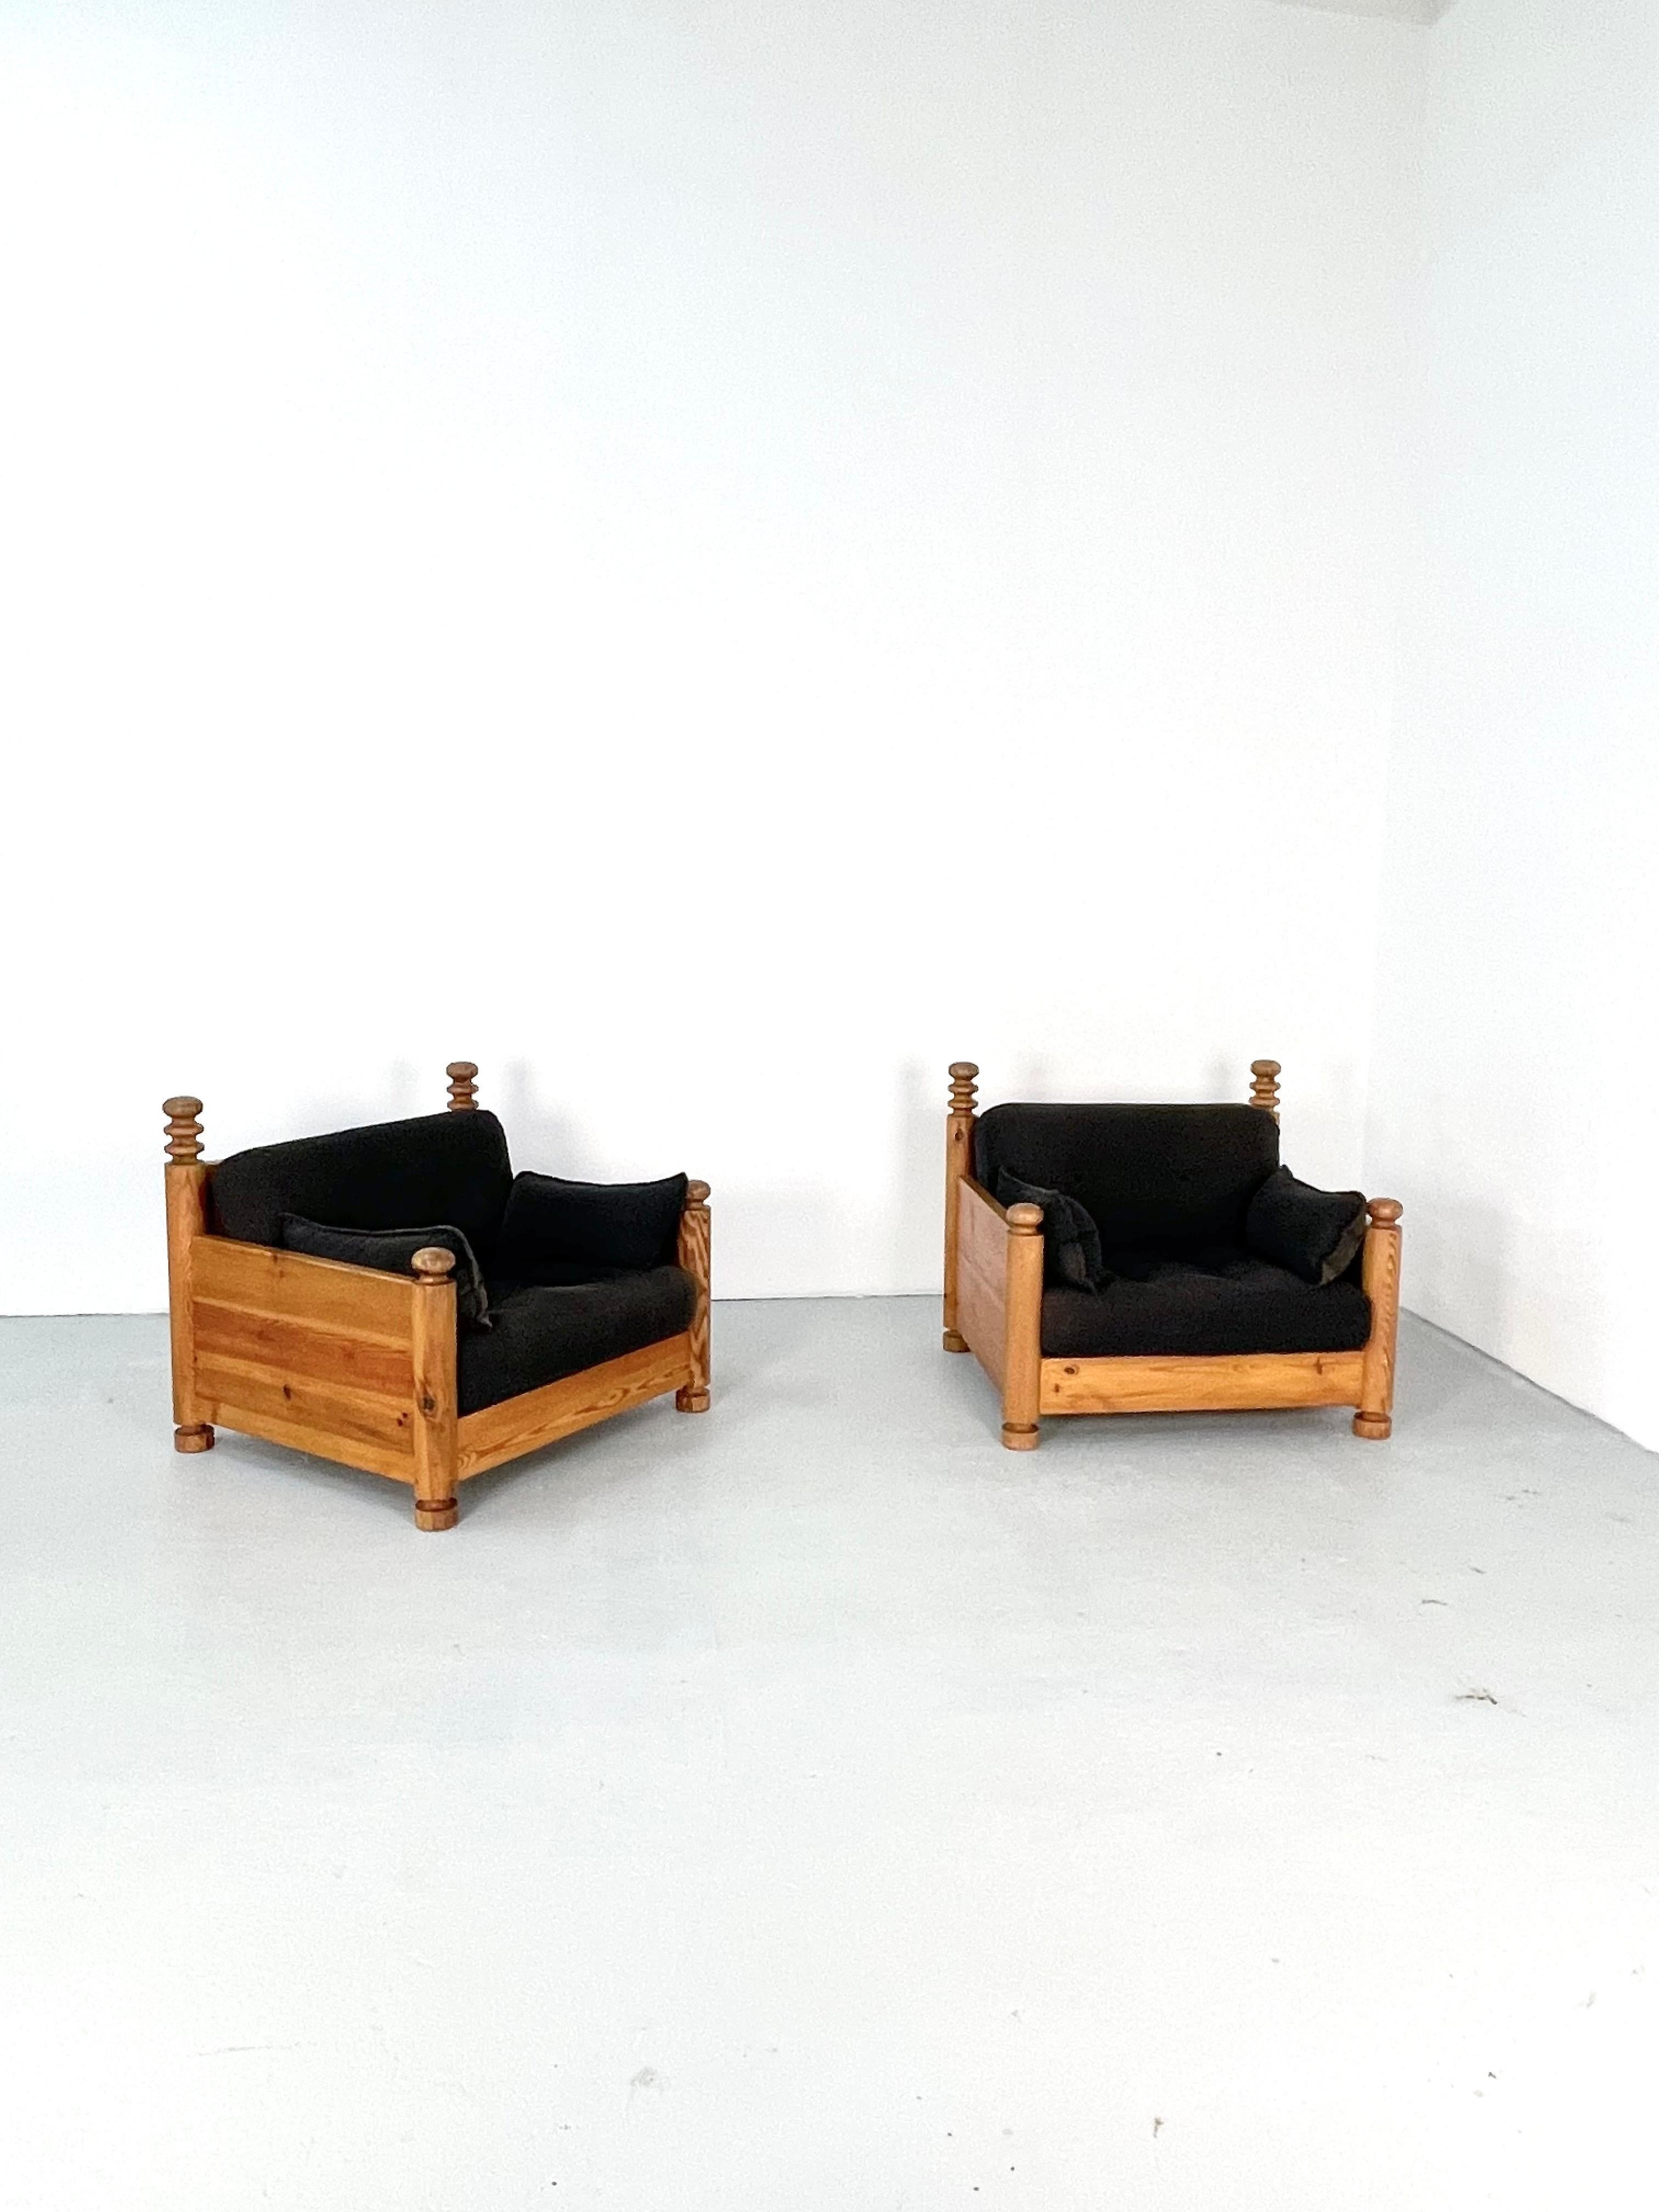 Une paire de grandes et rares chaises faciles des designers suédois Uno & Östen Kristiansson. Exécuté par Luxus en Suède en 1970. Pin massif et tapisserie d'origine. Extrêmement confortable.
Excellent état vintage avec de très petits signes